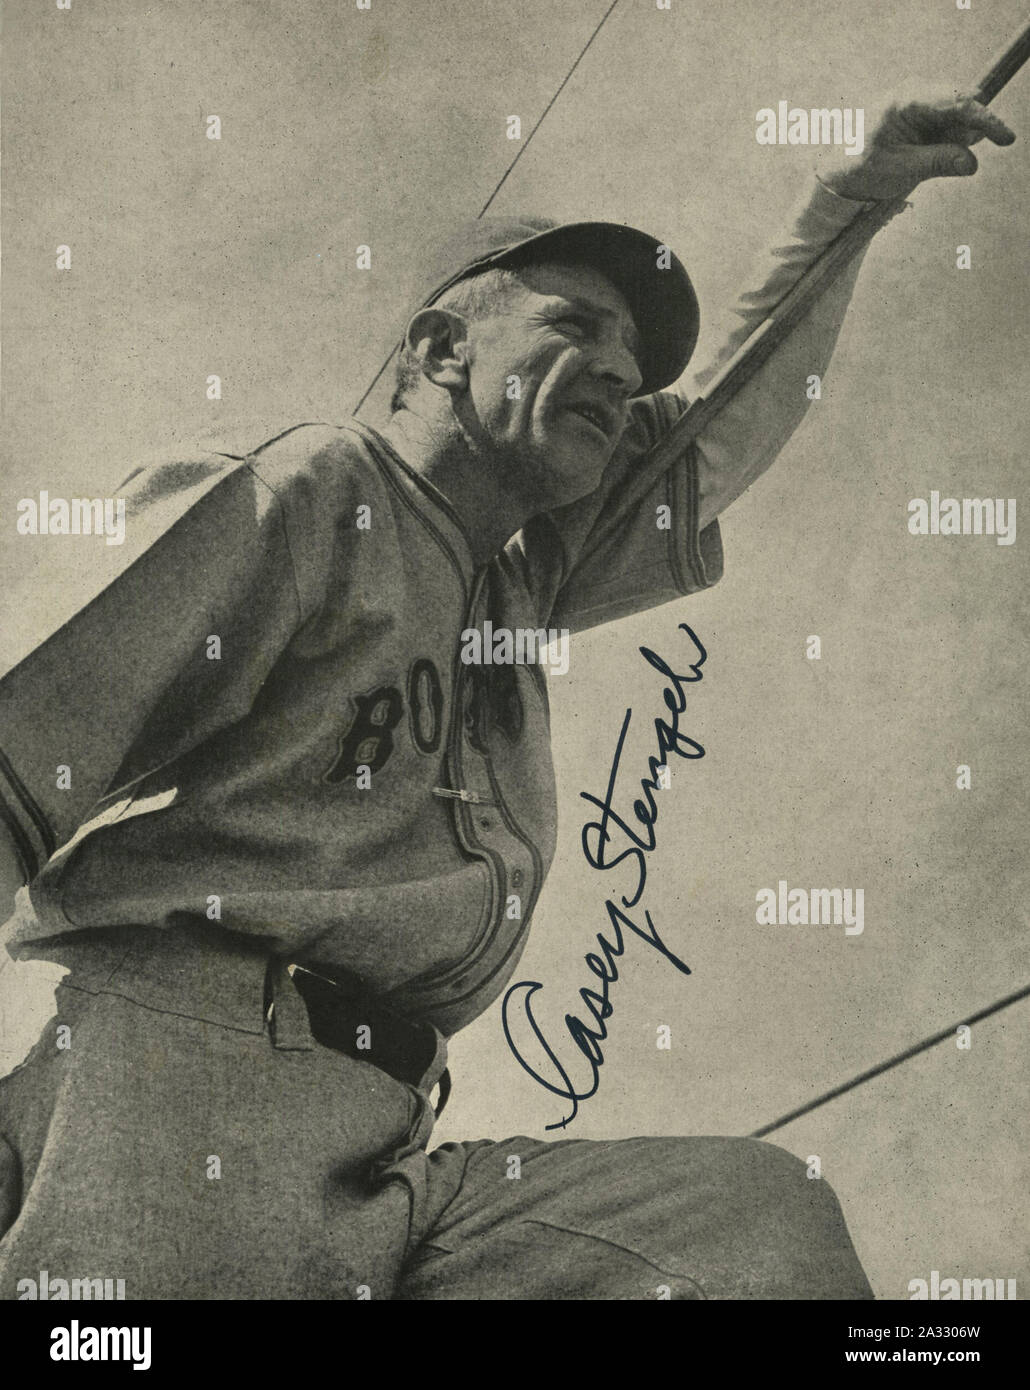 Schwarz-weiß Fotografie Hall of Fame Baseball manager Casey Stengel dargestellt mit dem Boston Braves. Stockfoto